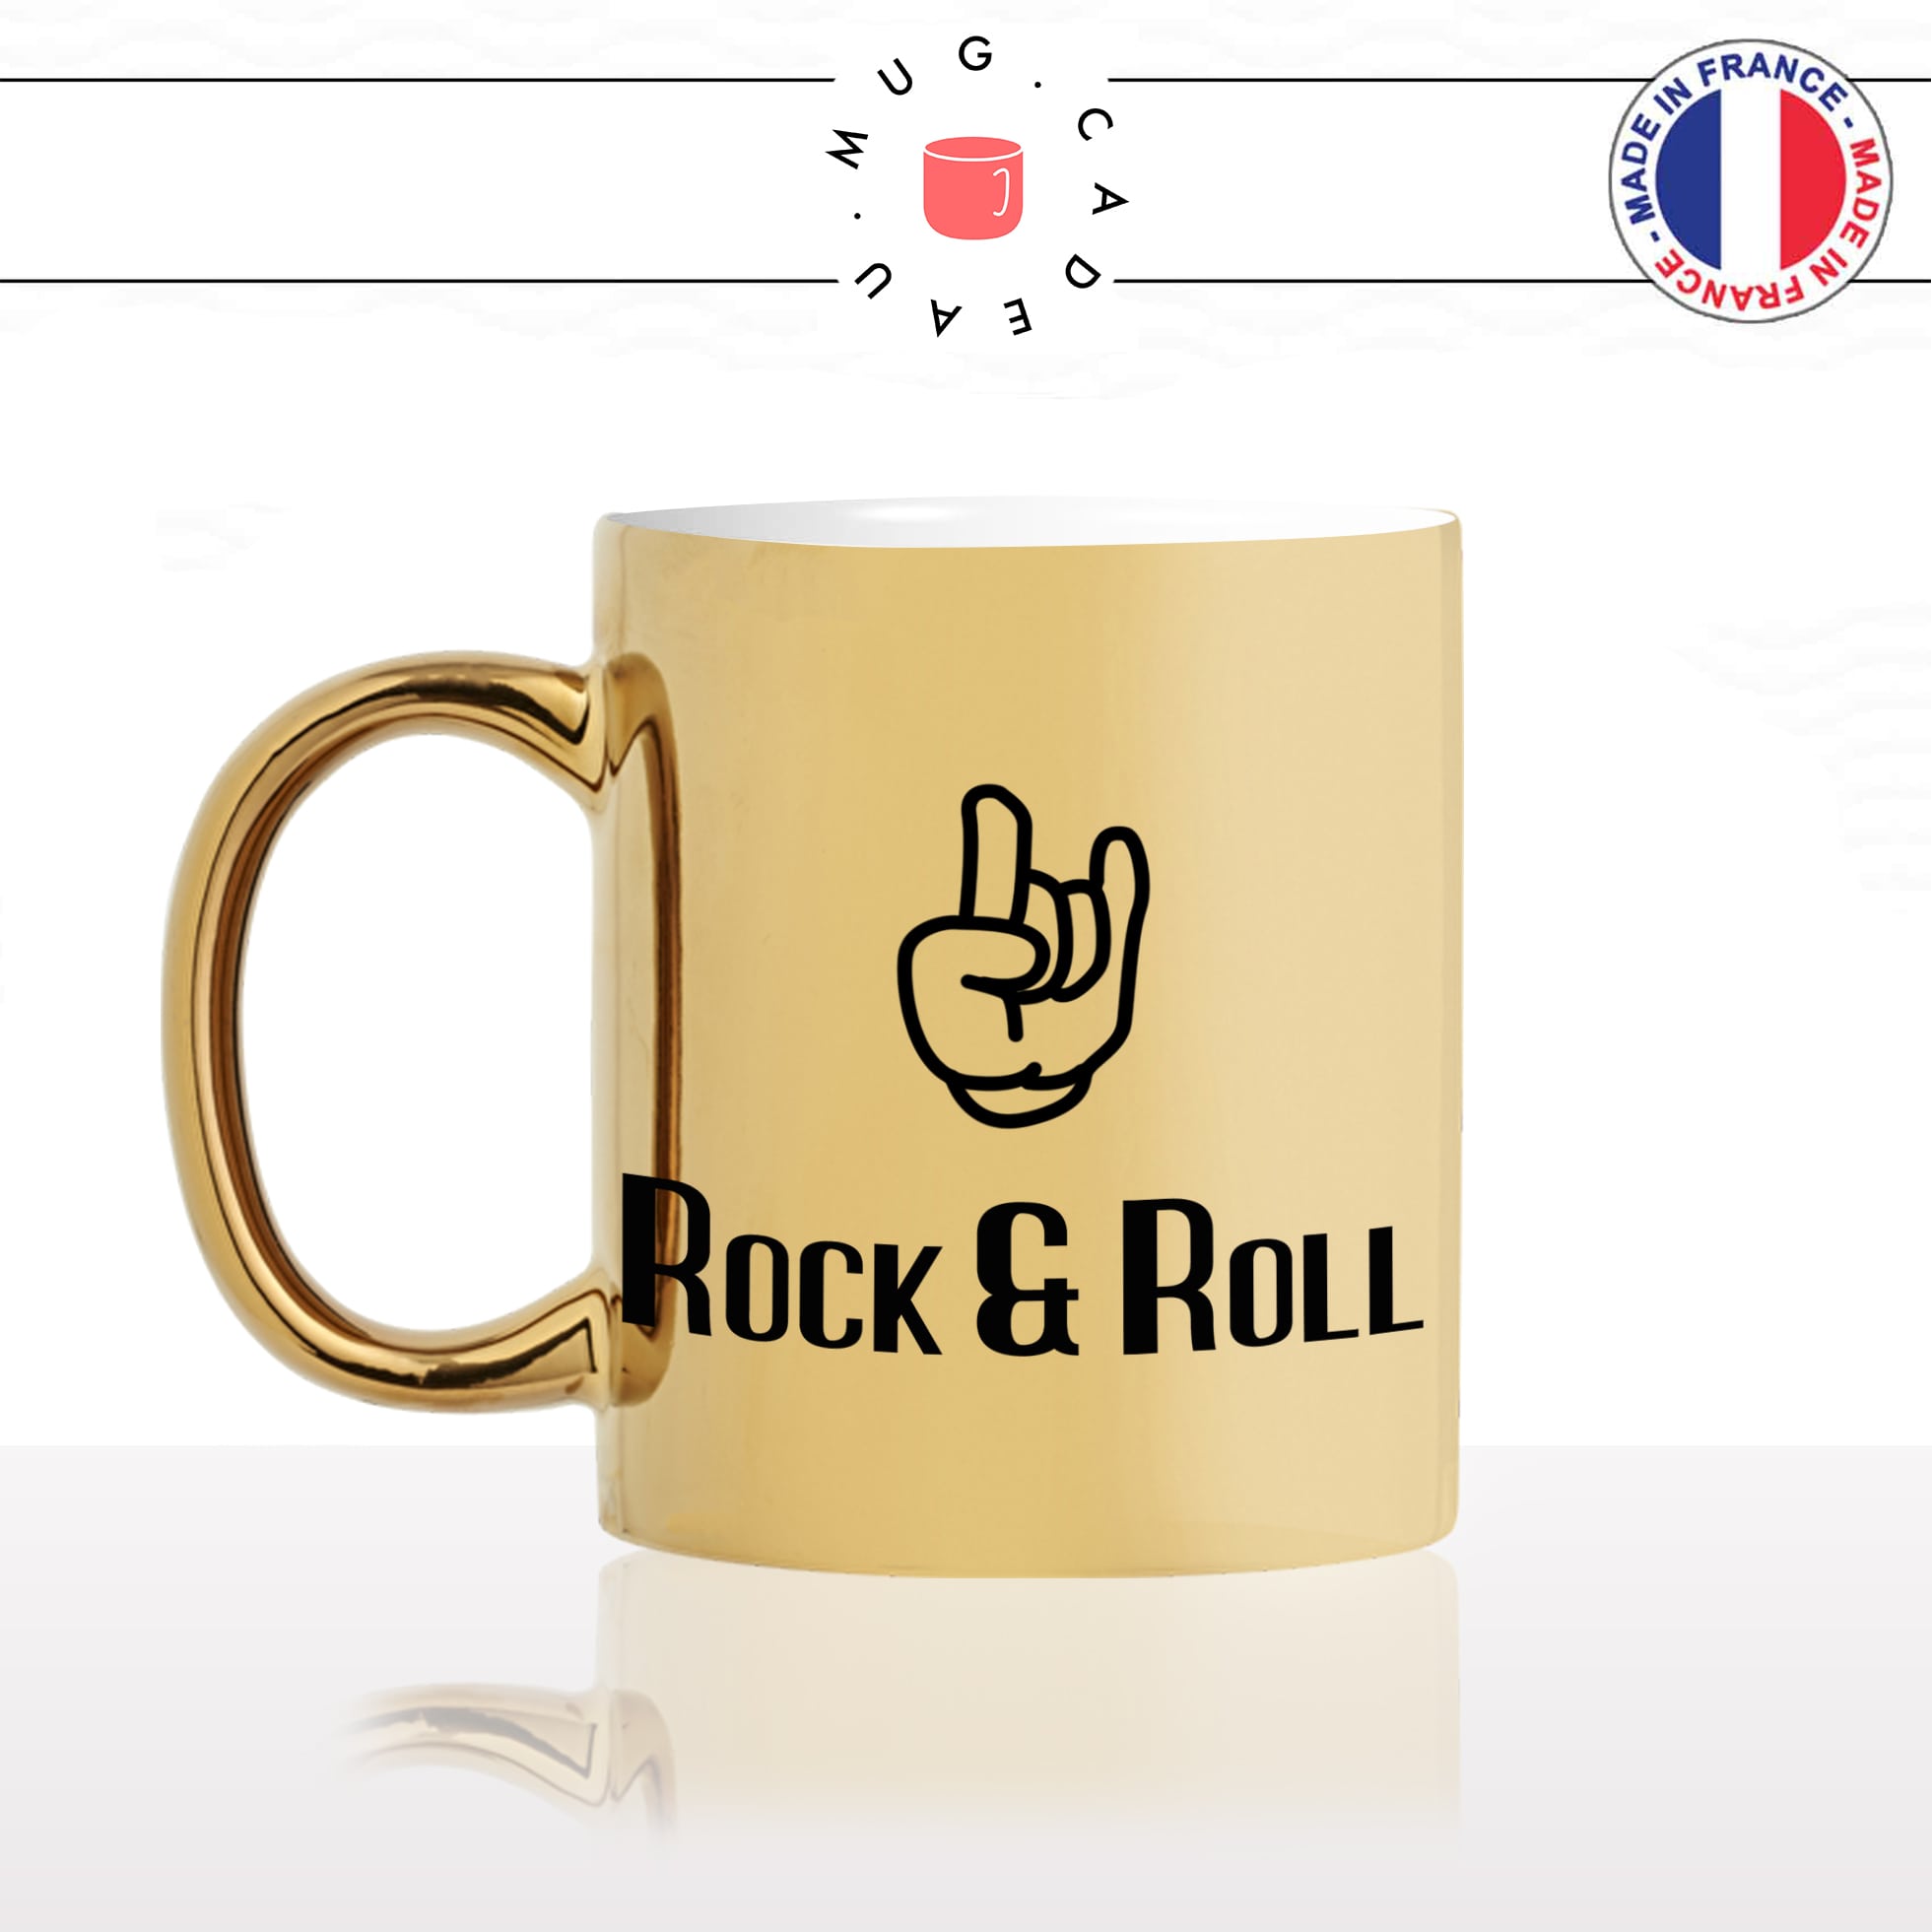 mug-tasse-or-gold-rock-and-roll-main-guitare-dessin-musique-music-chanteur-rolling-stones-idée-cadeau-originale-fun-personnalisé-café-thé-min